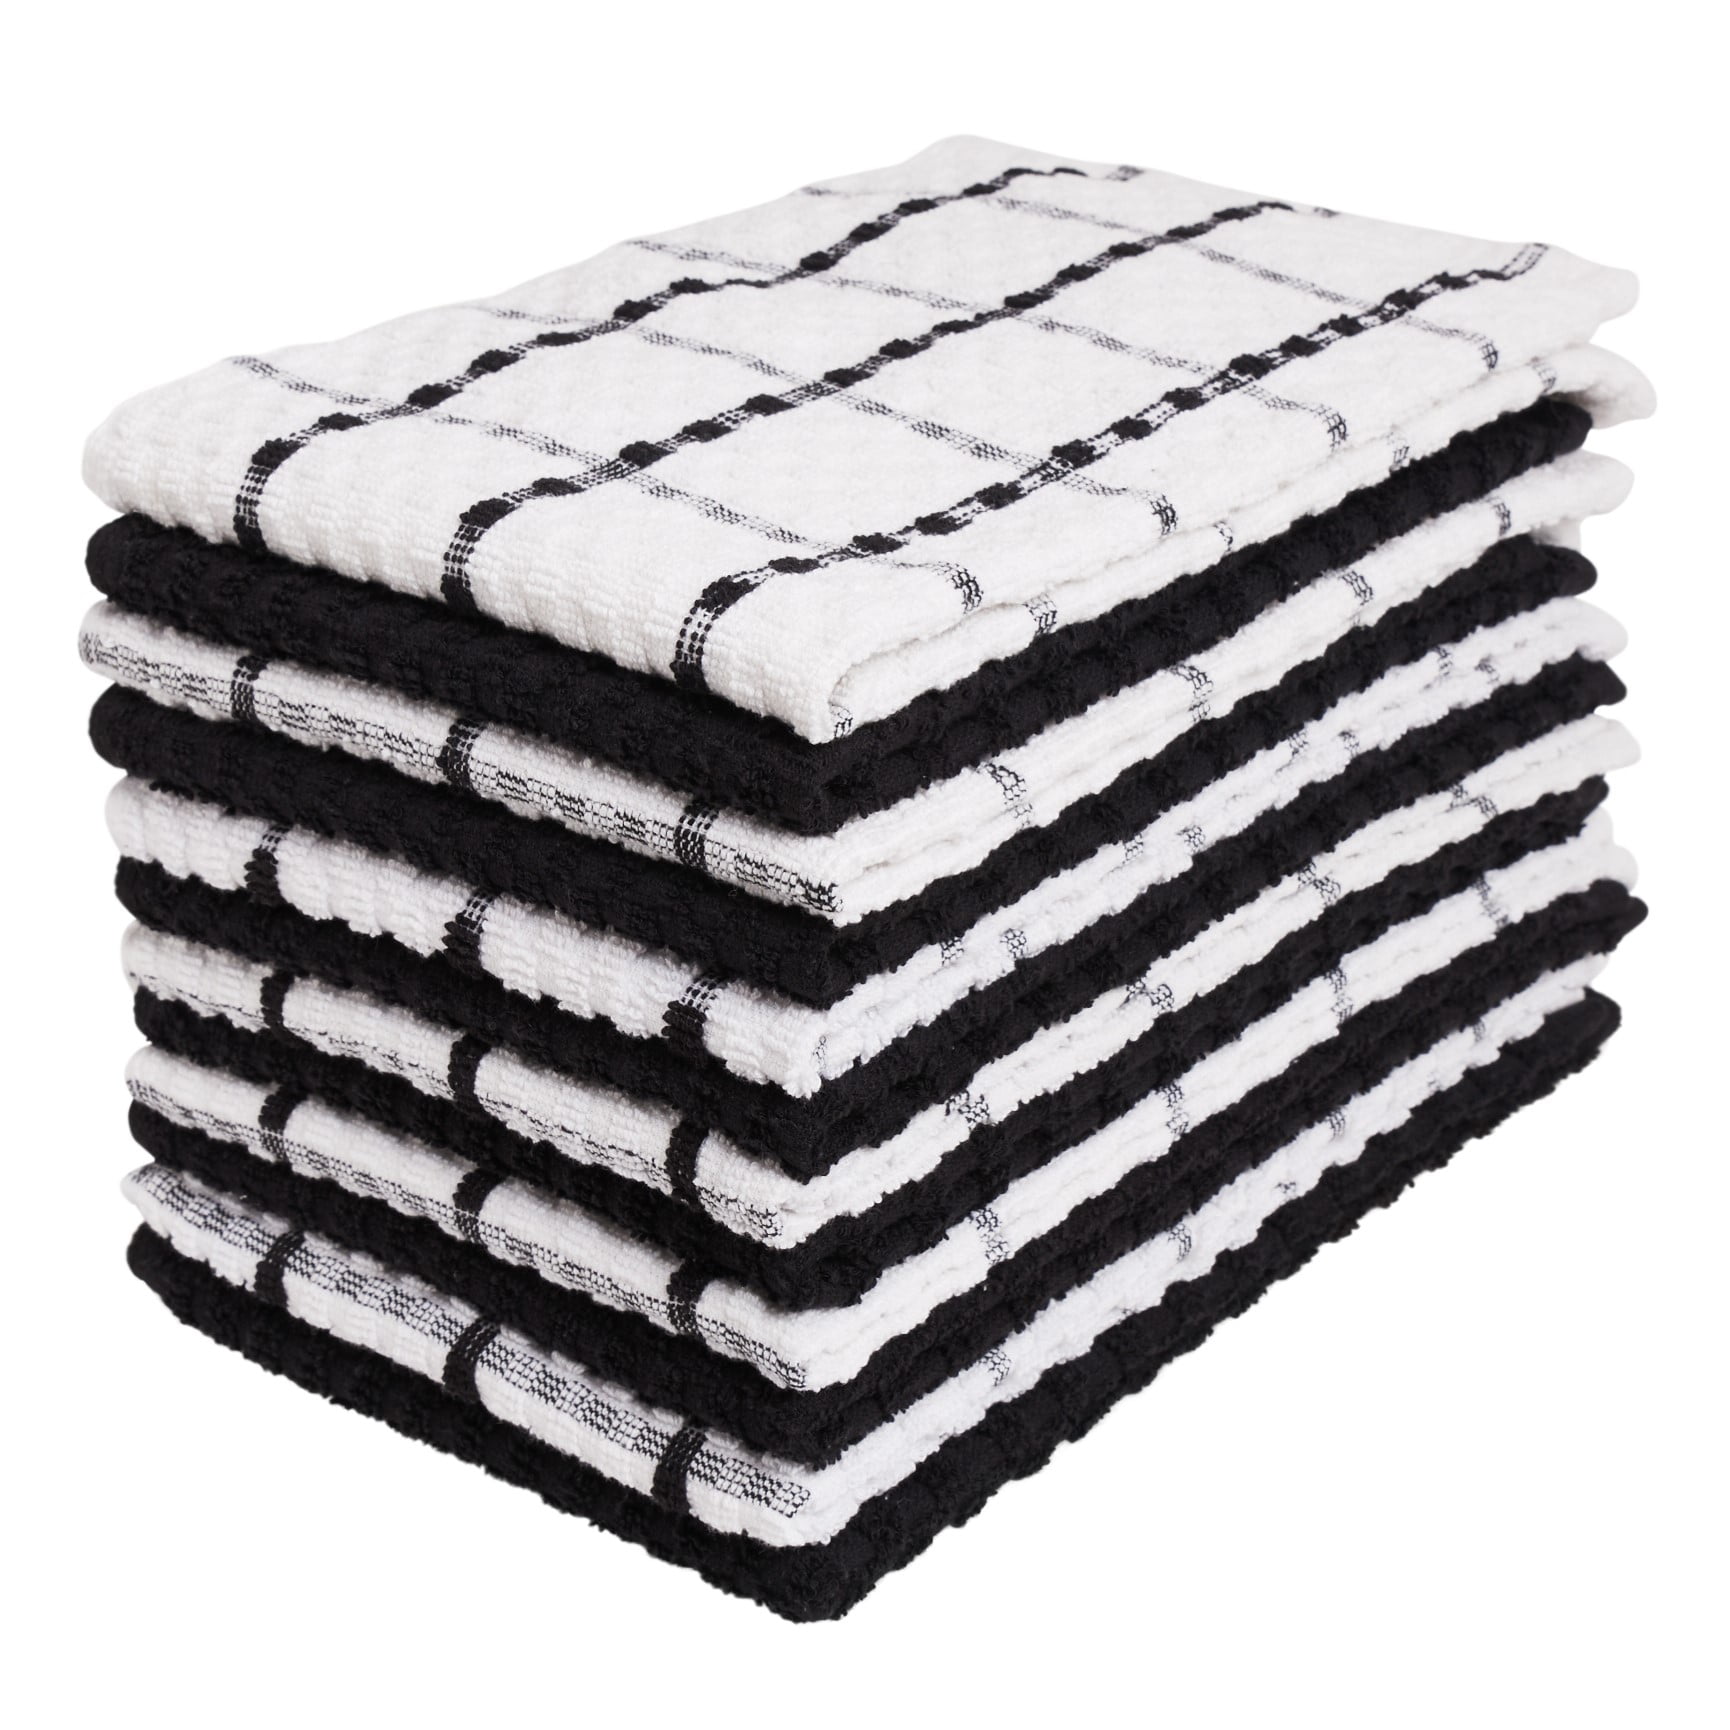 Tea Towel Set, Hand-Spun Cotton